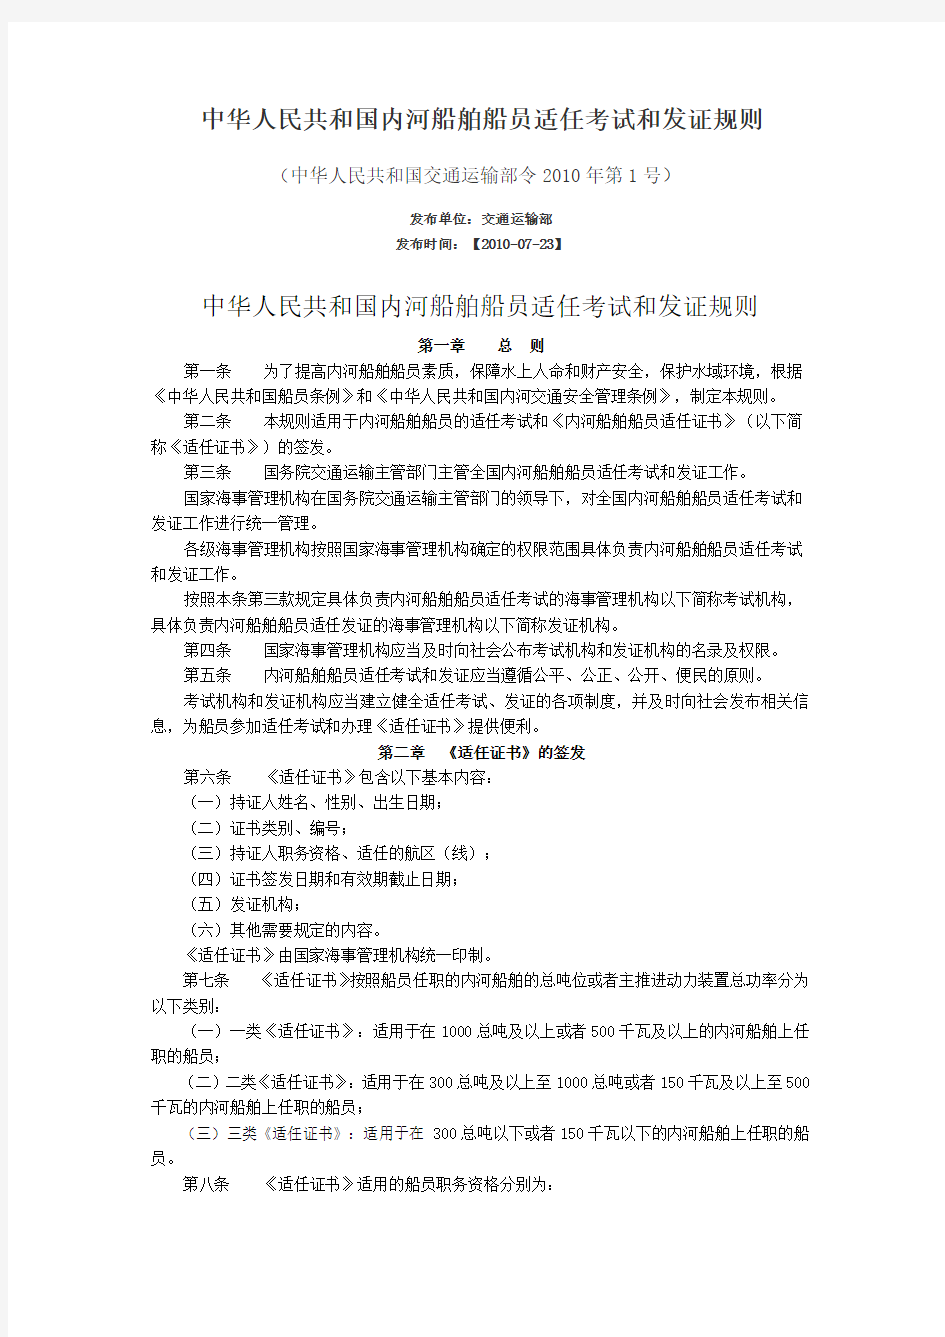 中华人民共和国内河船舶船员适任考试和发证规则(交通运输部令2010年第1号)